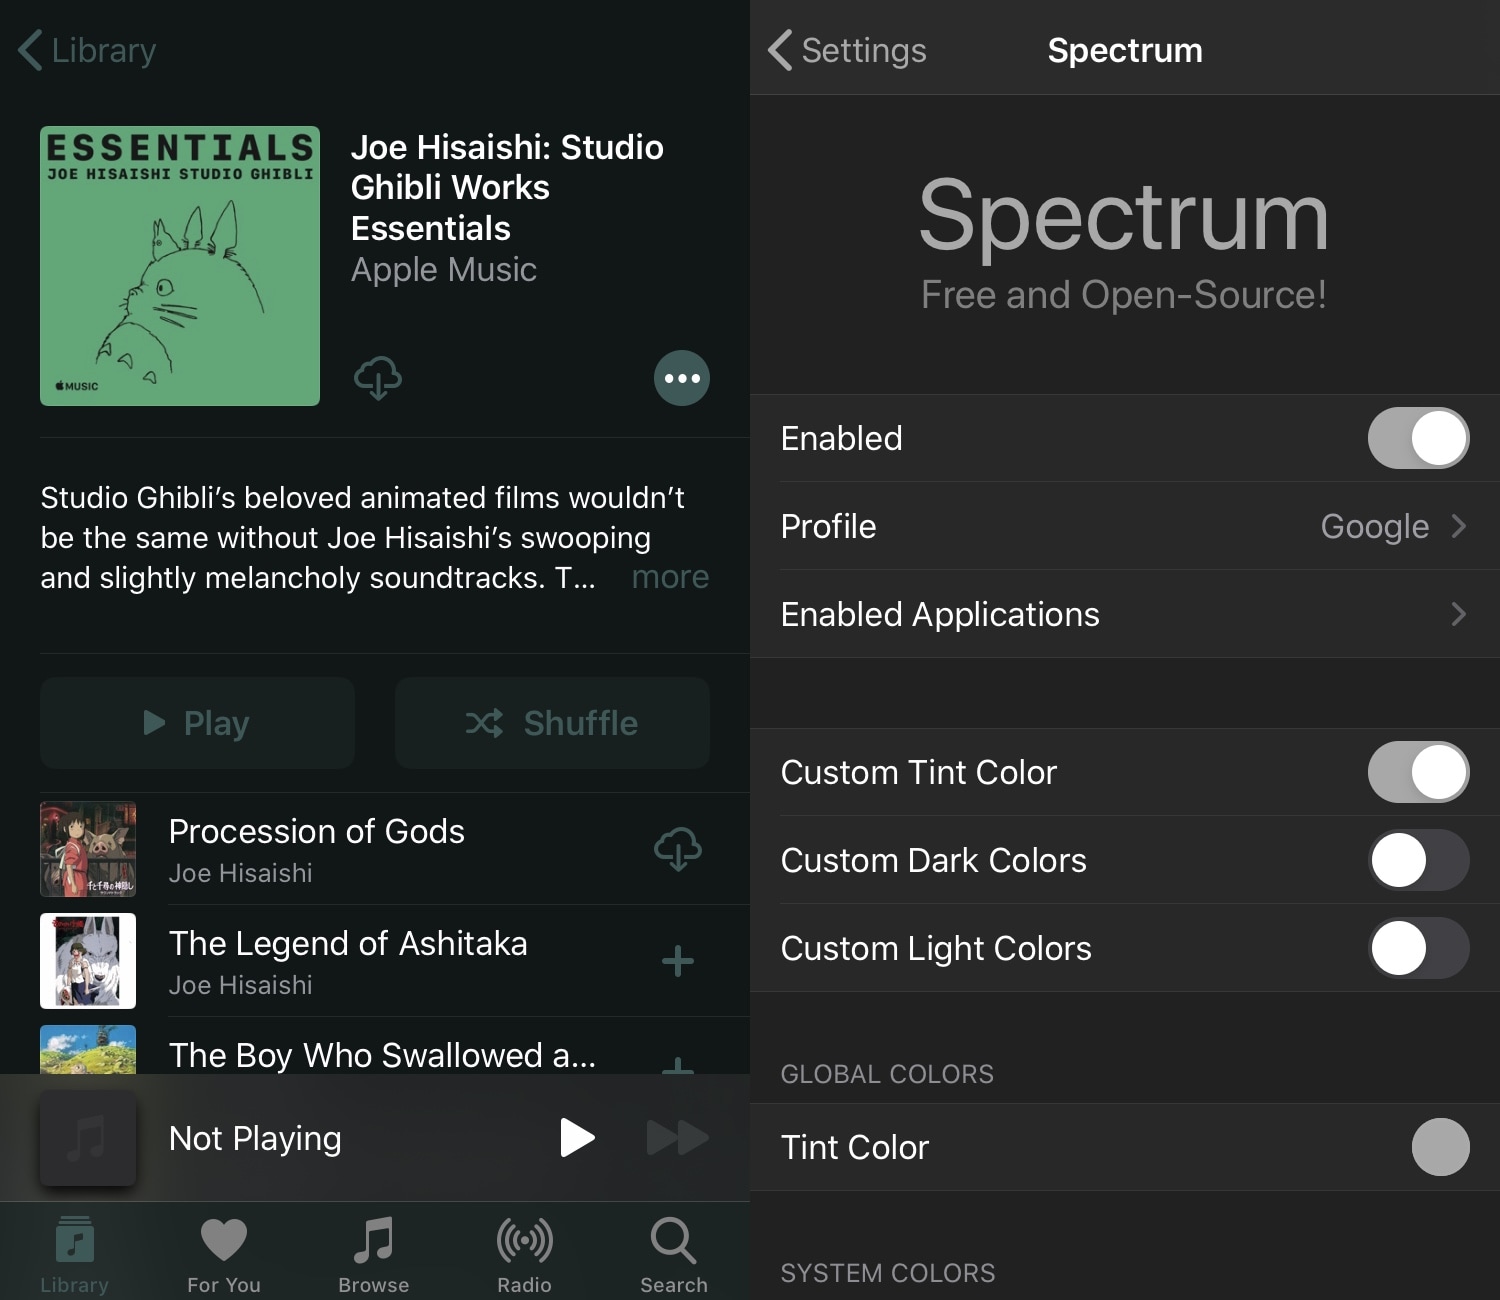 Spectrum gör att jailbreakers kan färga iOS-användargränssnittet gratis 2